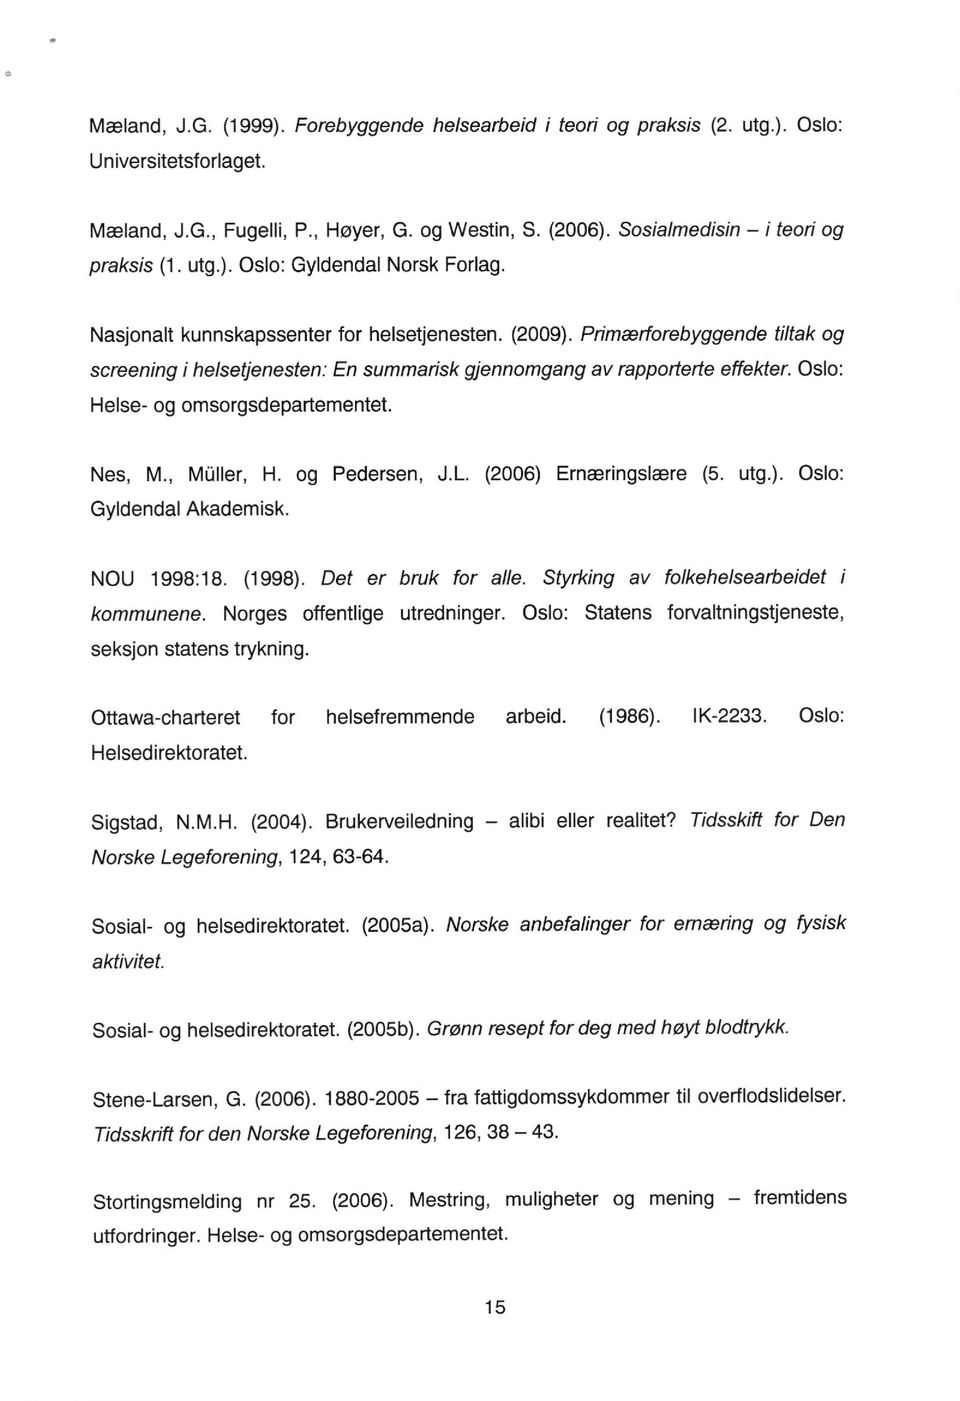 Pimartorebyggende tiltak og screening i helsetjenesten: En summaisk gjennomgang av rappofterte effekter. Oslo: Helse- og omsorgsdepartementet. Nes, M., Miiller, H. og Pedersen, J.L.